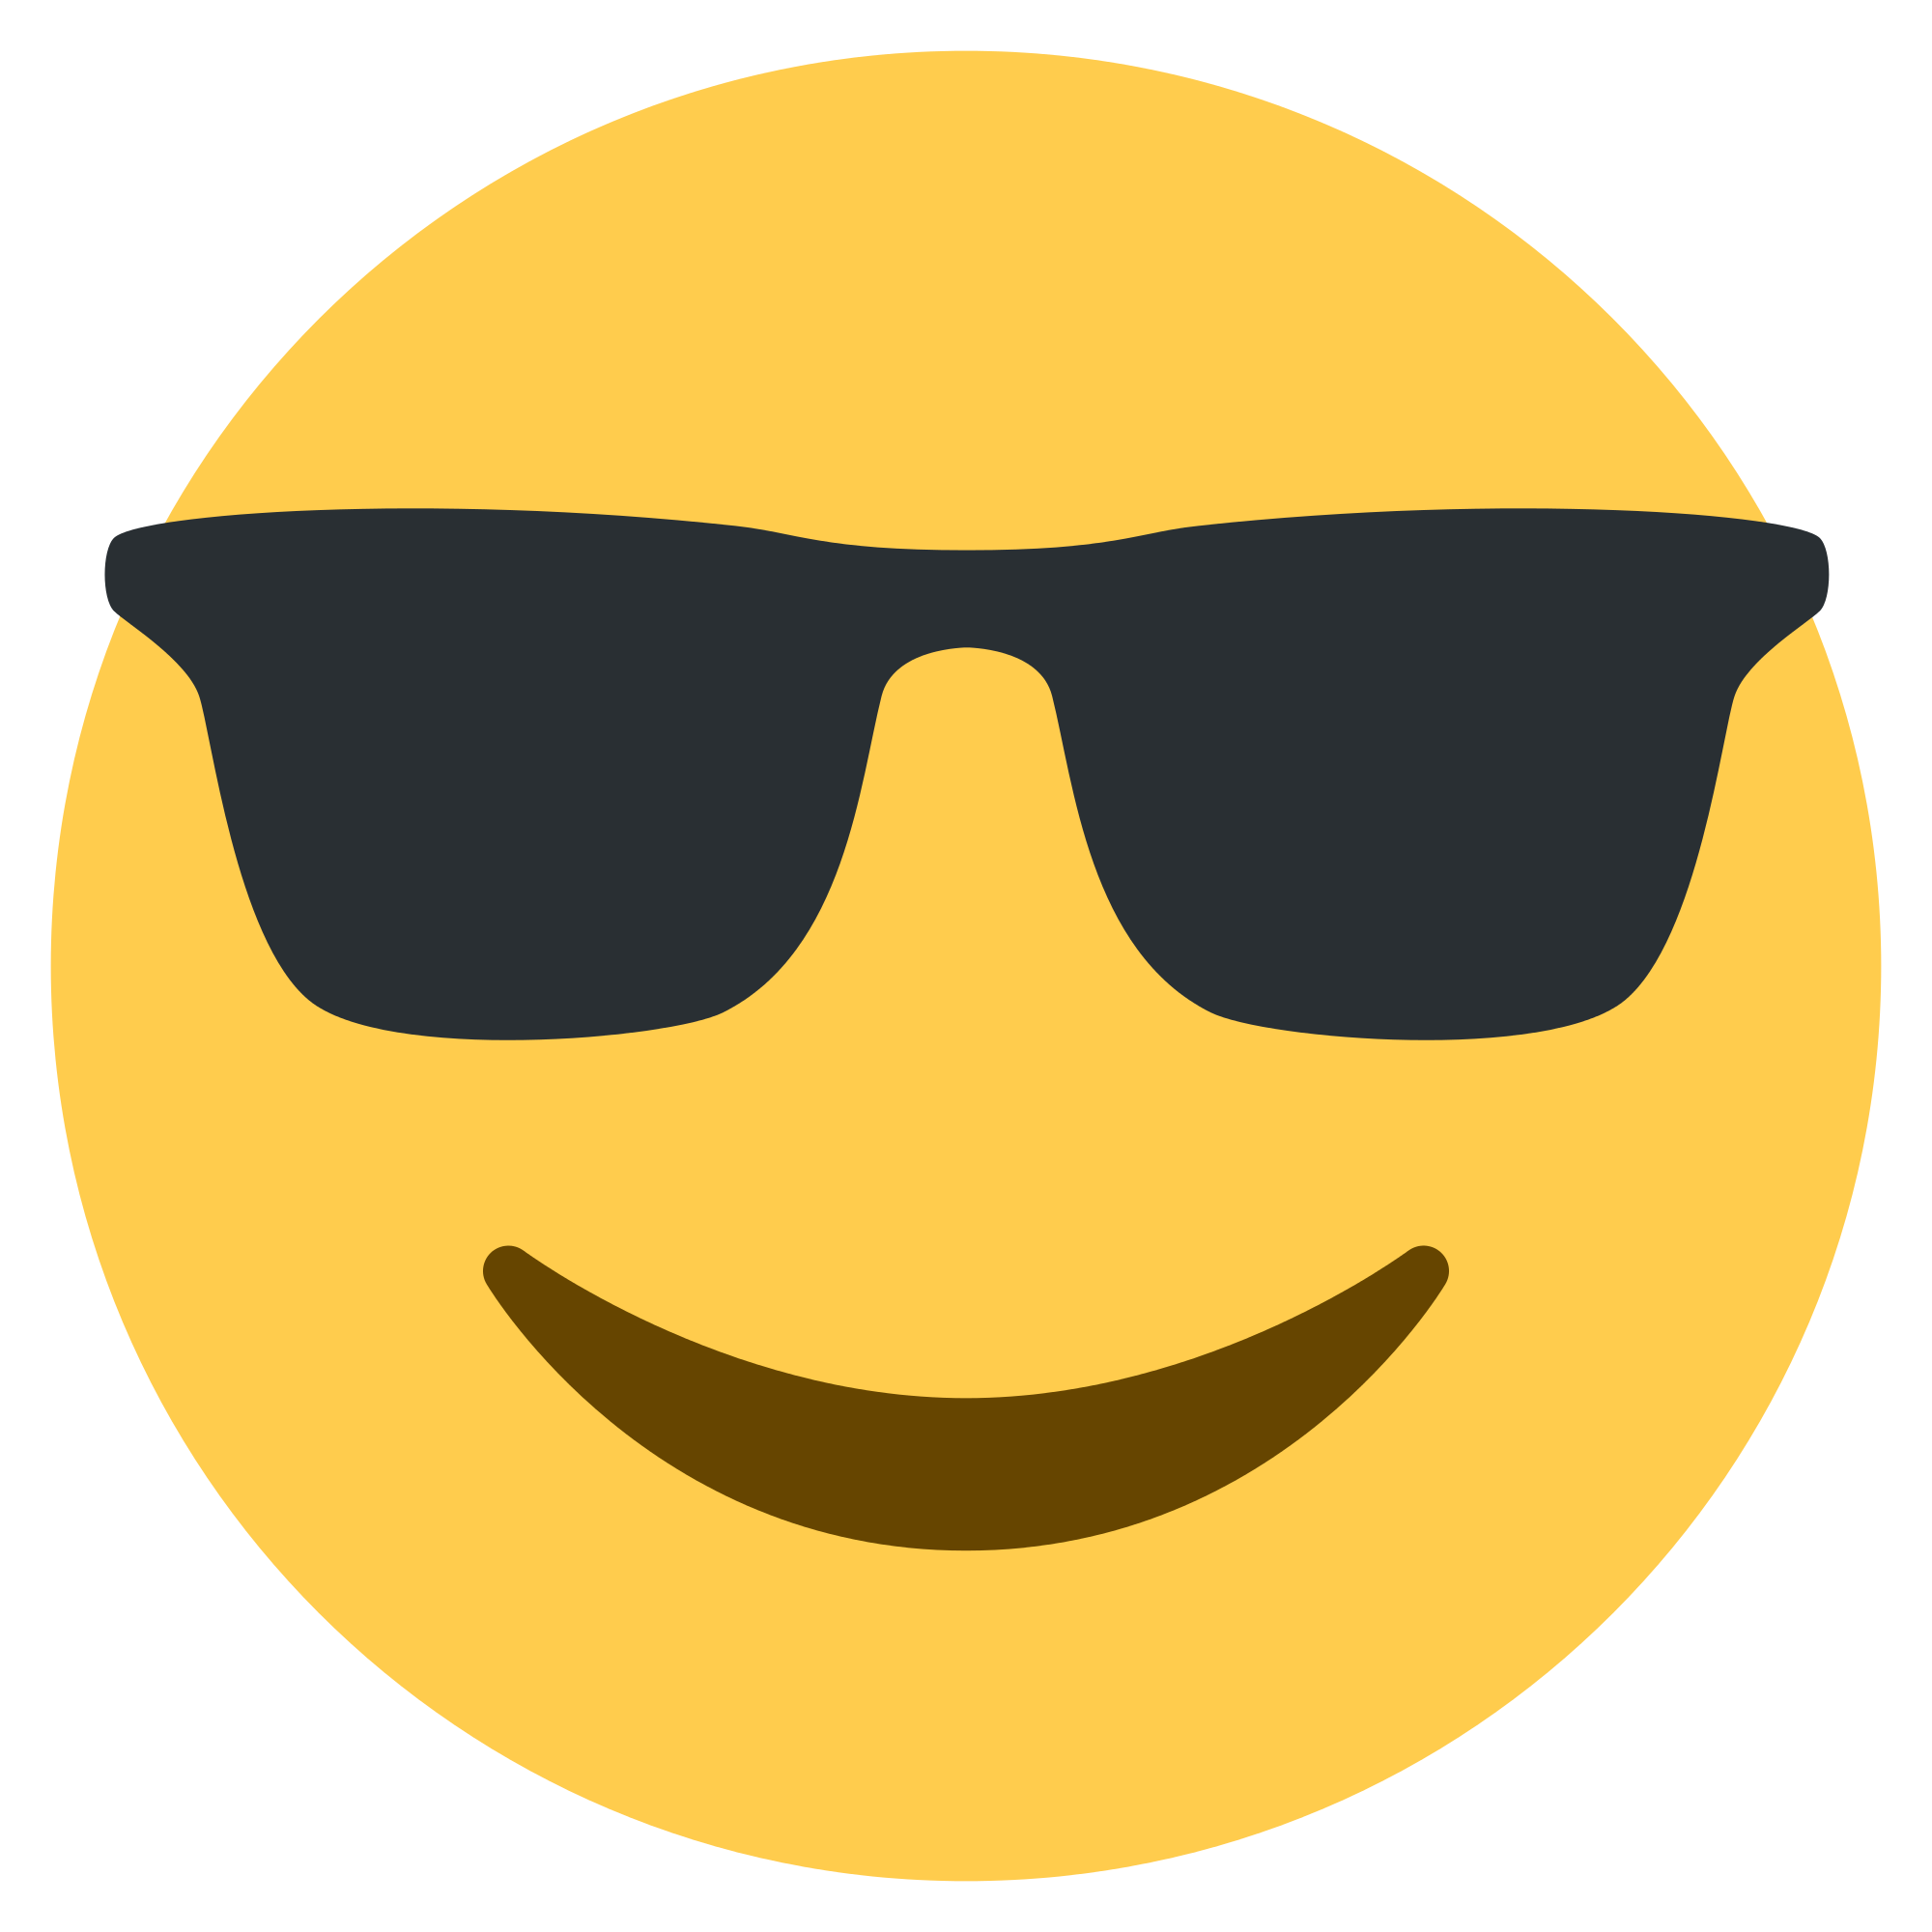 Download PNG image - Sunglasses Emoji PNG Transparent Background 